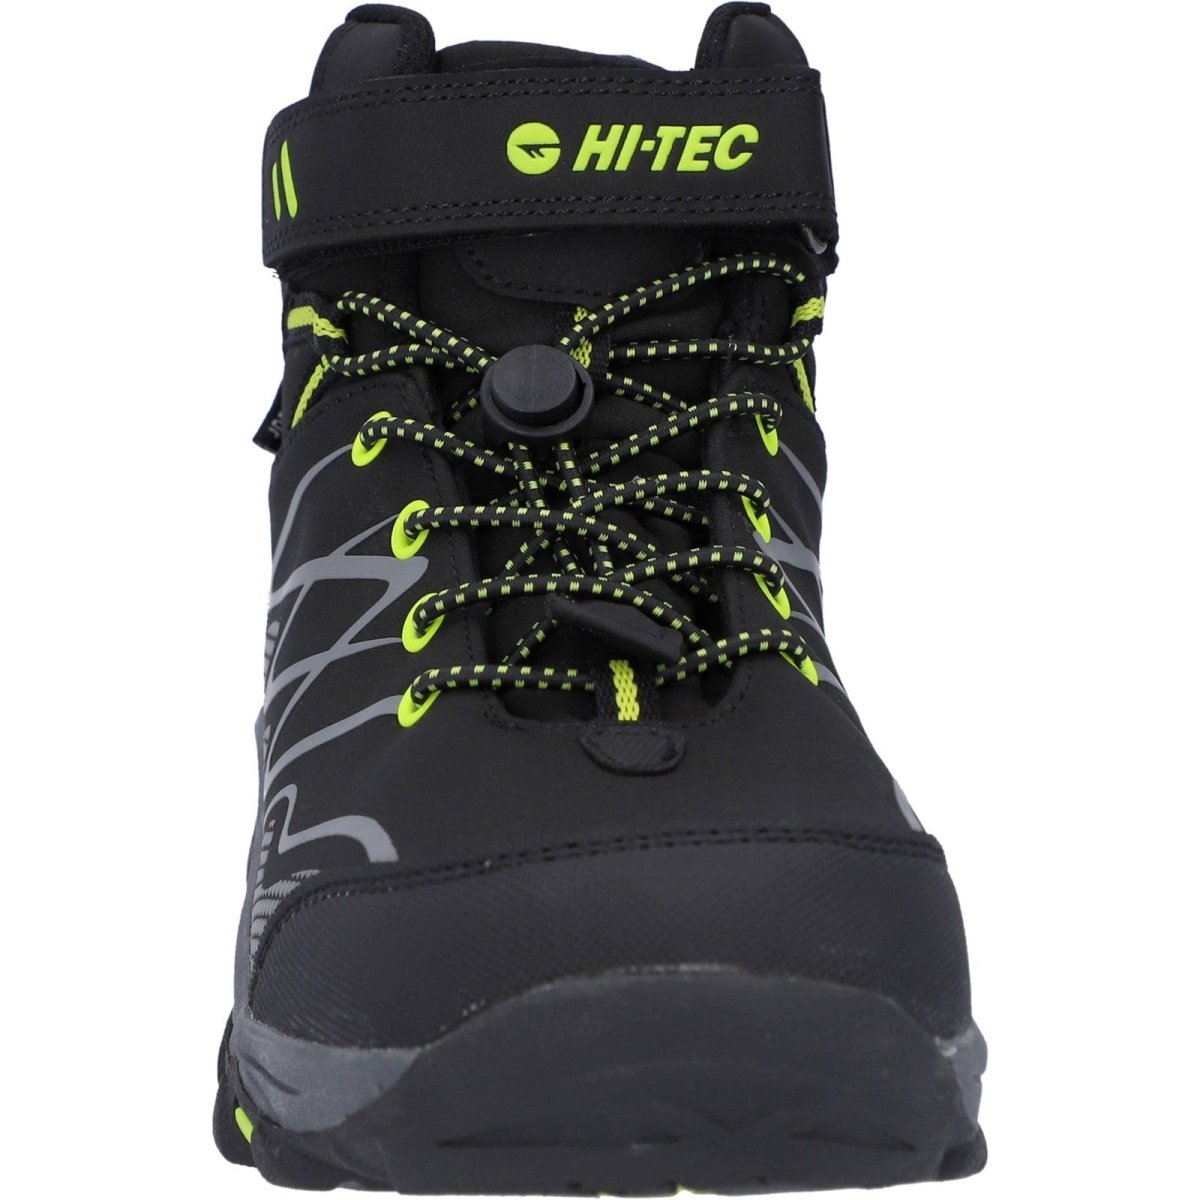 Hi-Tec Blackout Mid Boots - Shoe Store Direct